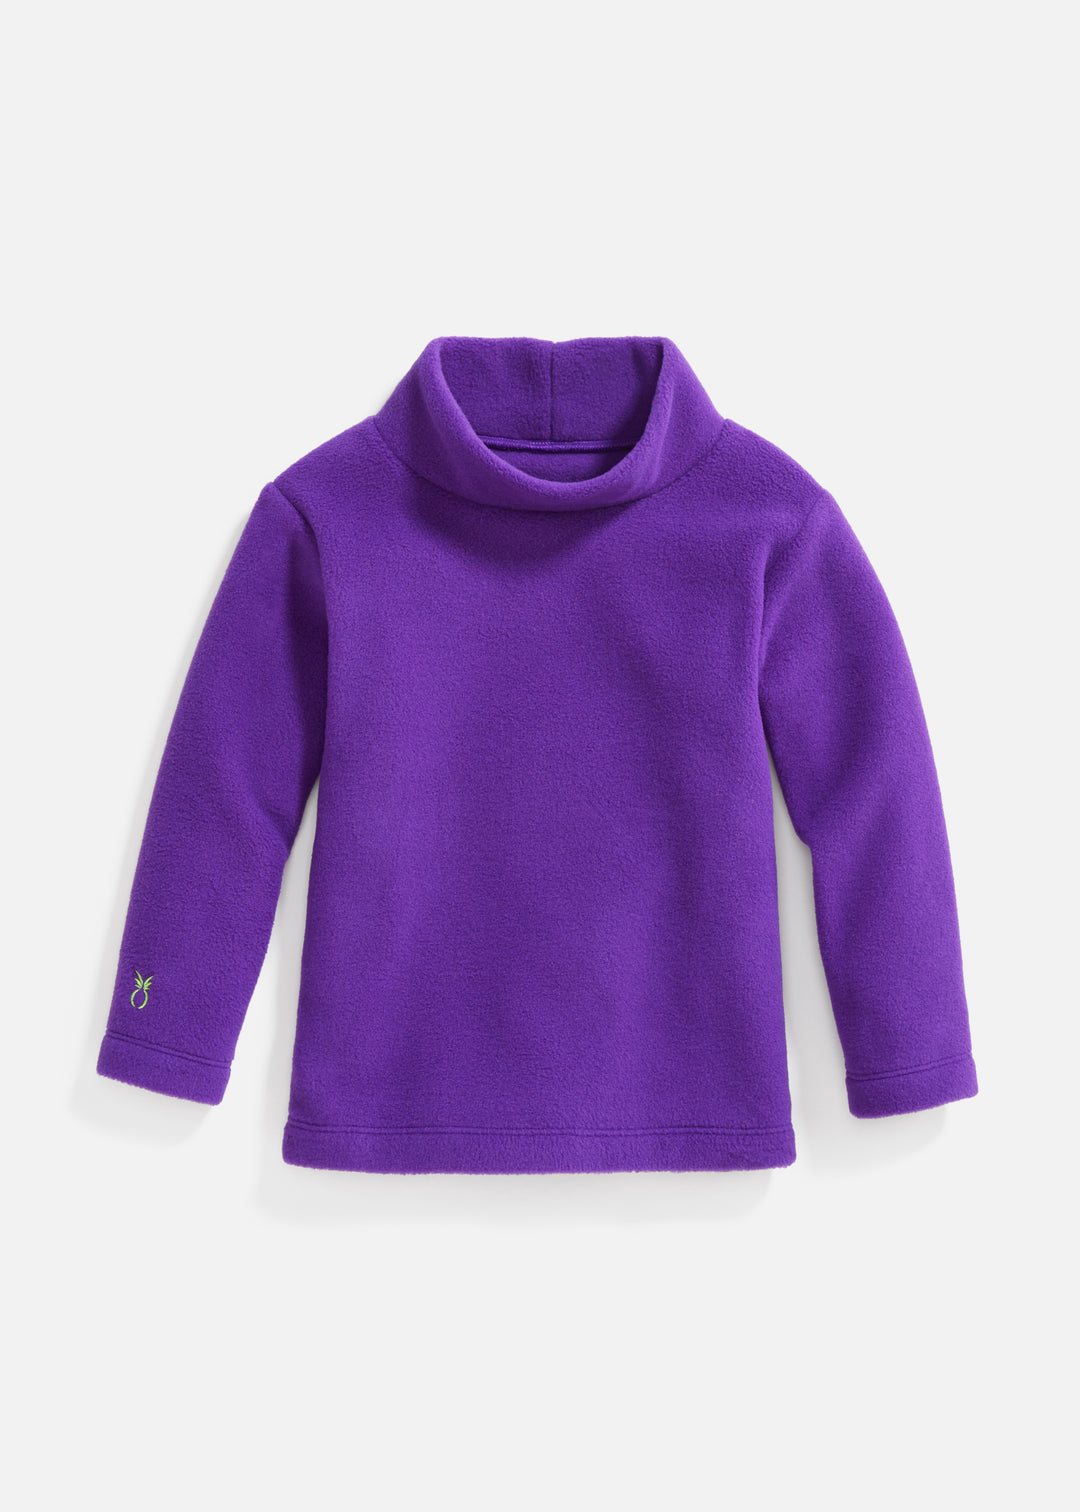 Toddler Turtleneck (Purple)